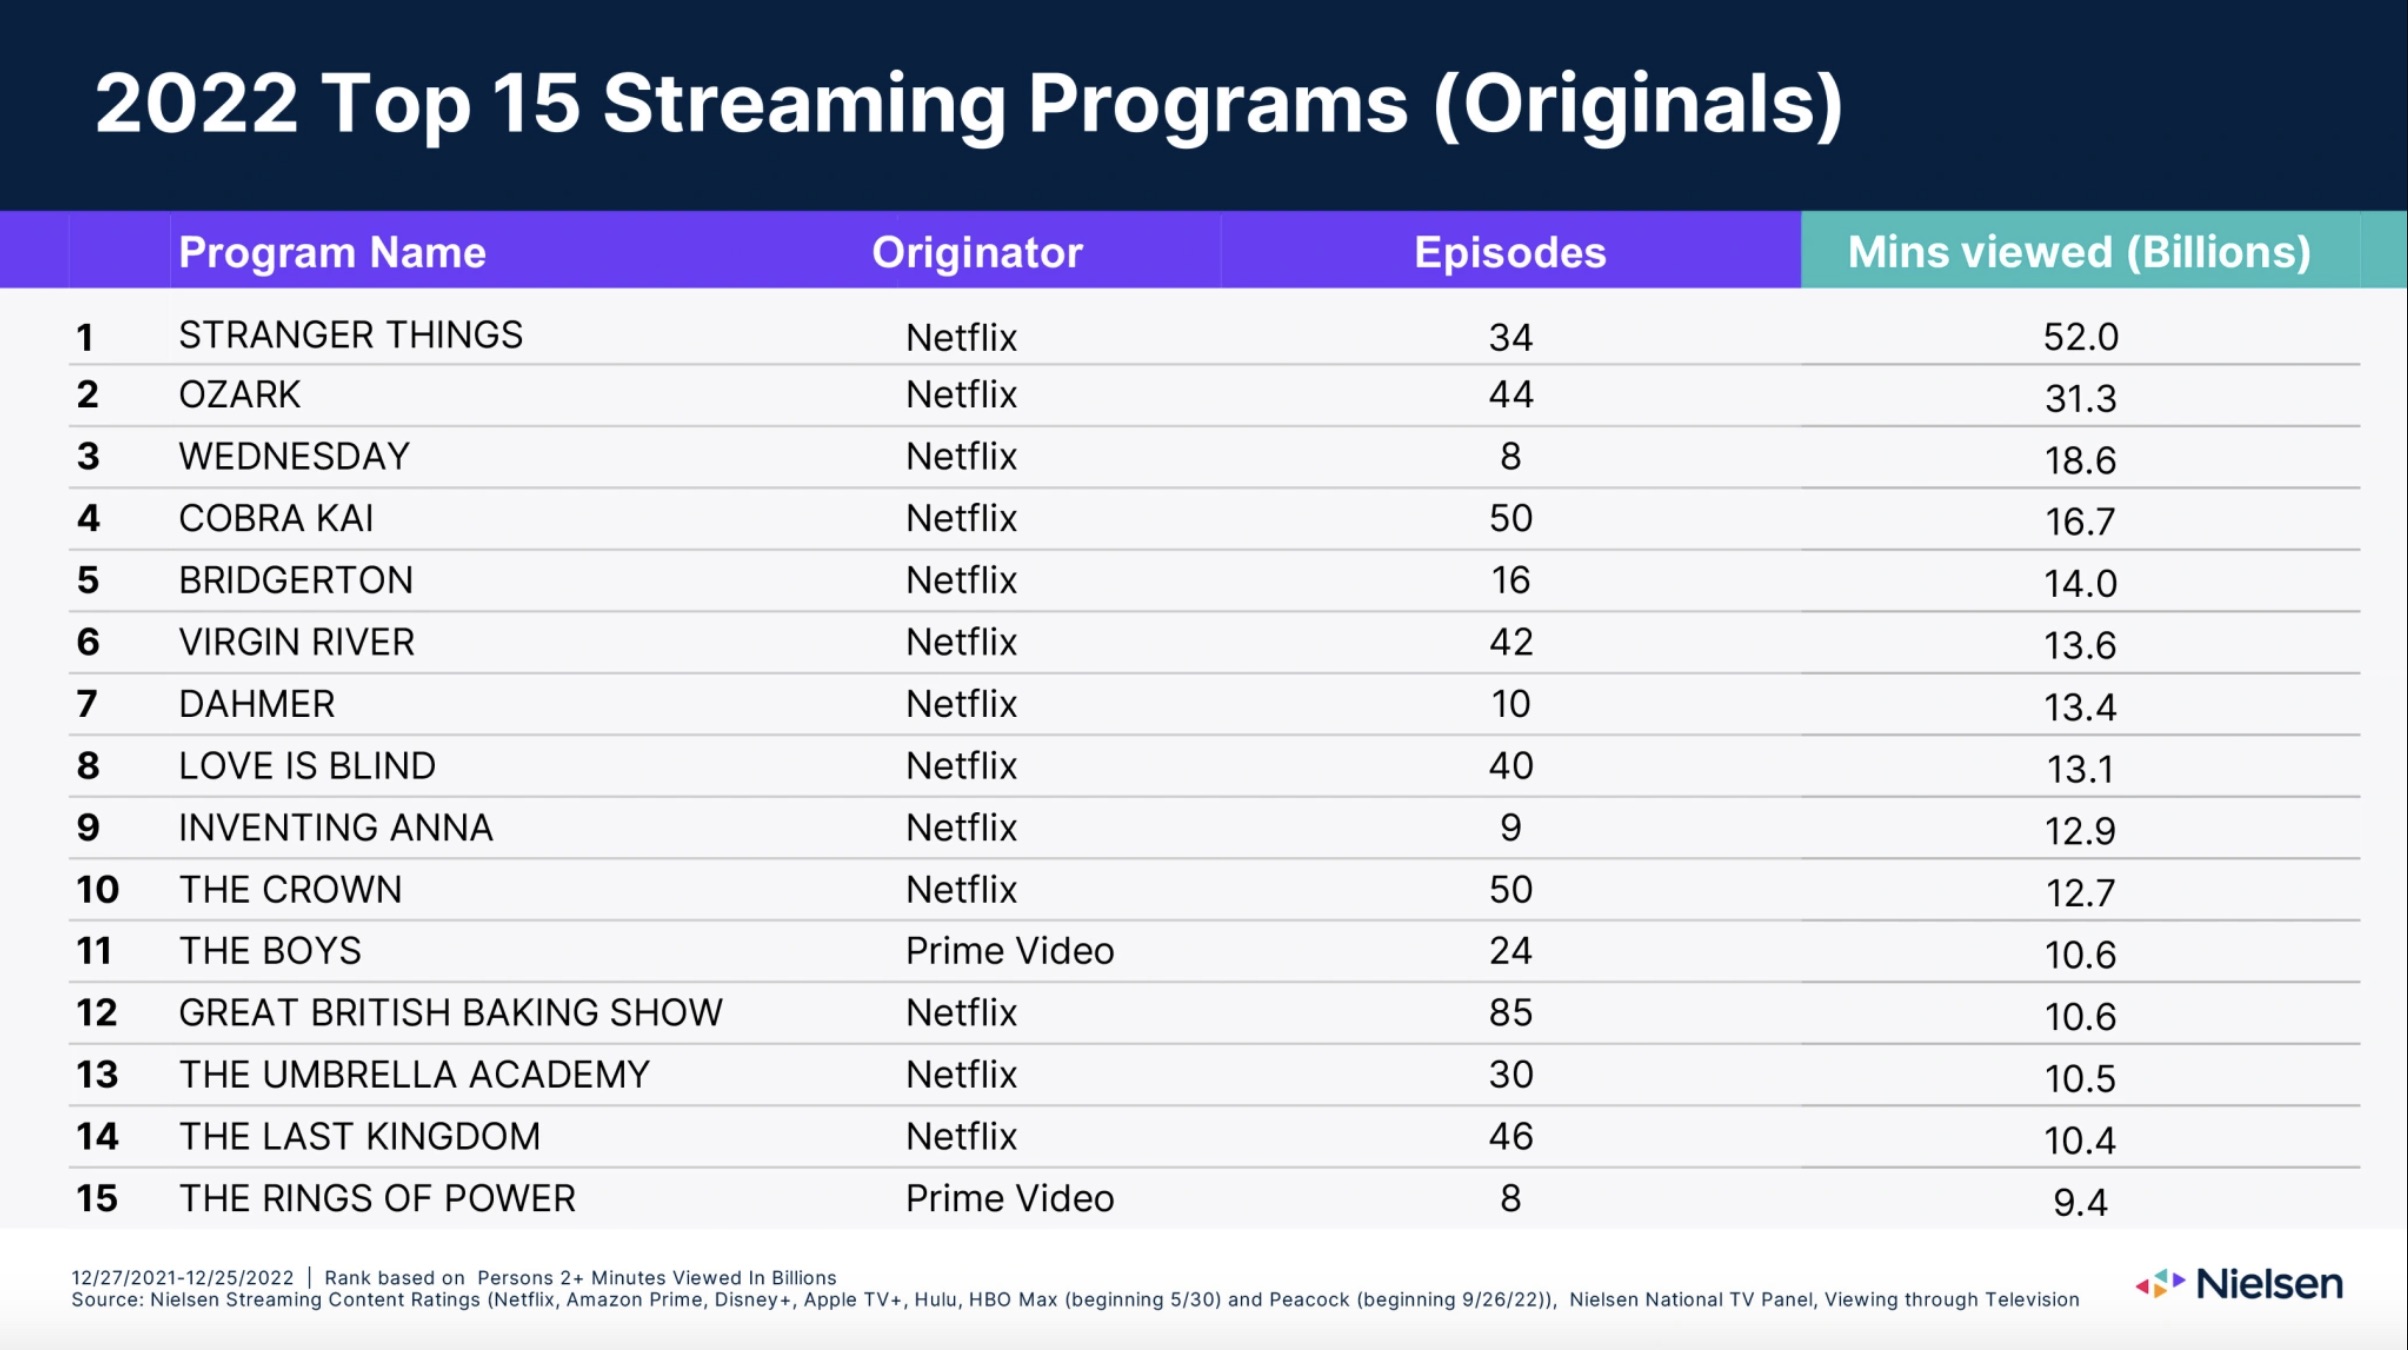 Tabela dos 15 principais programas de streaming originais da Nielsen em 2022